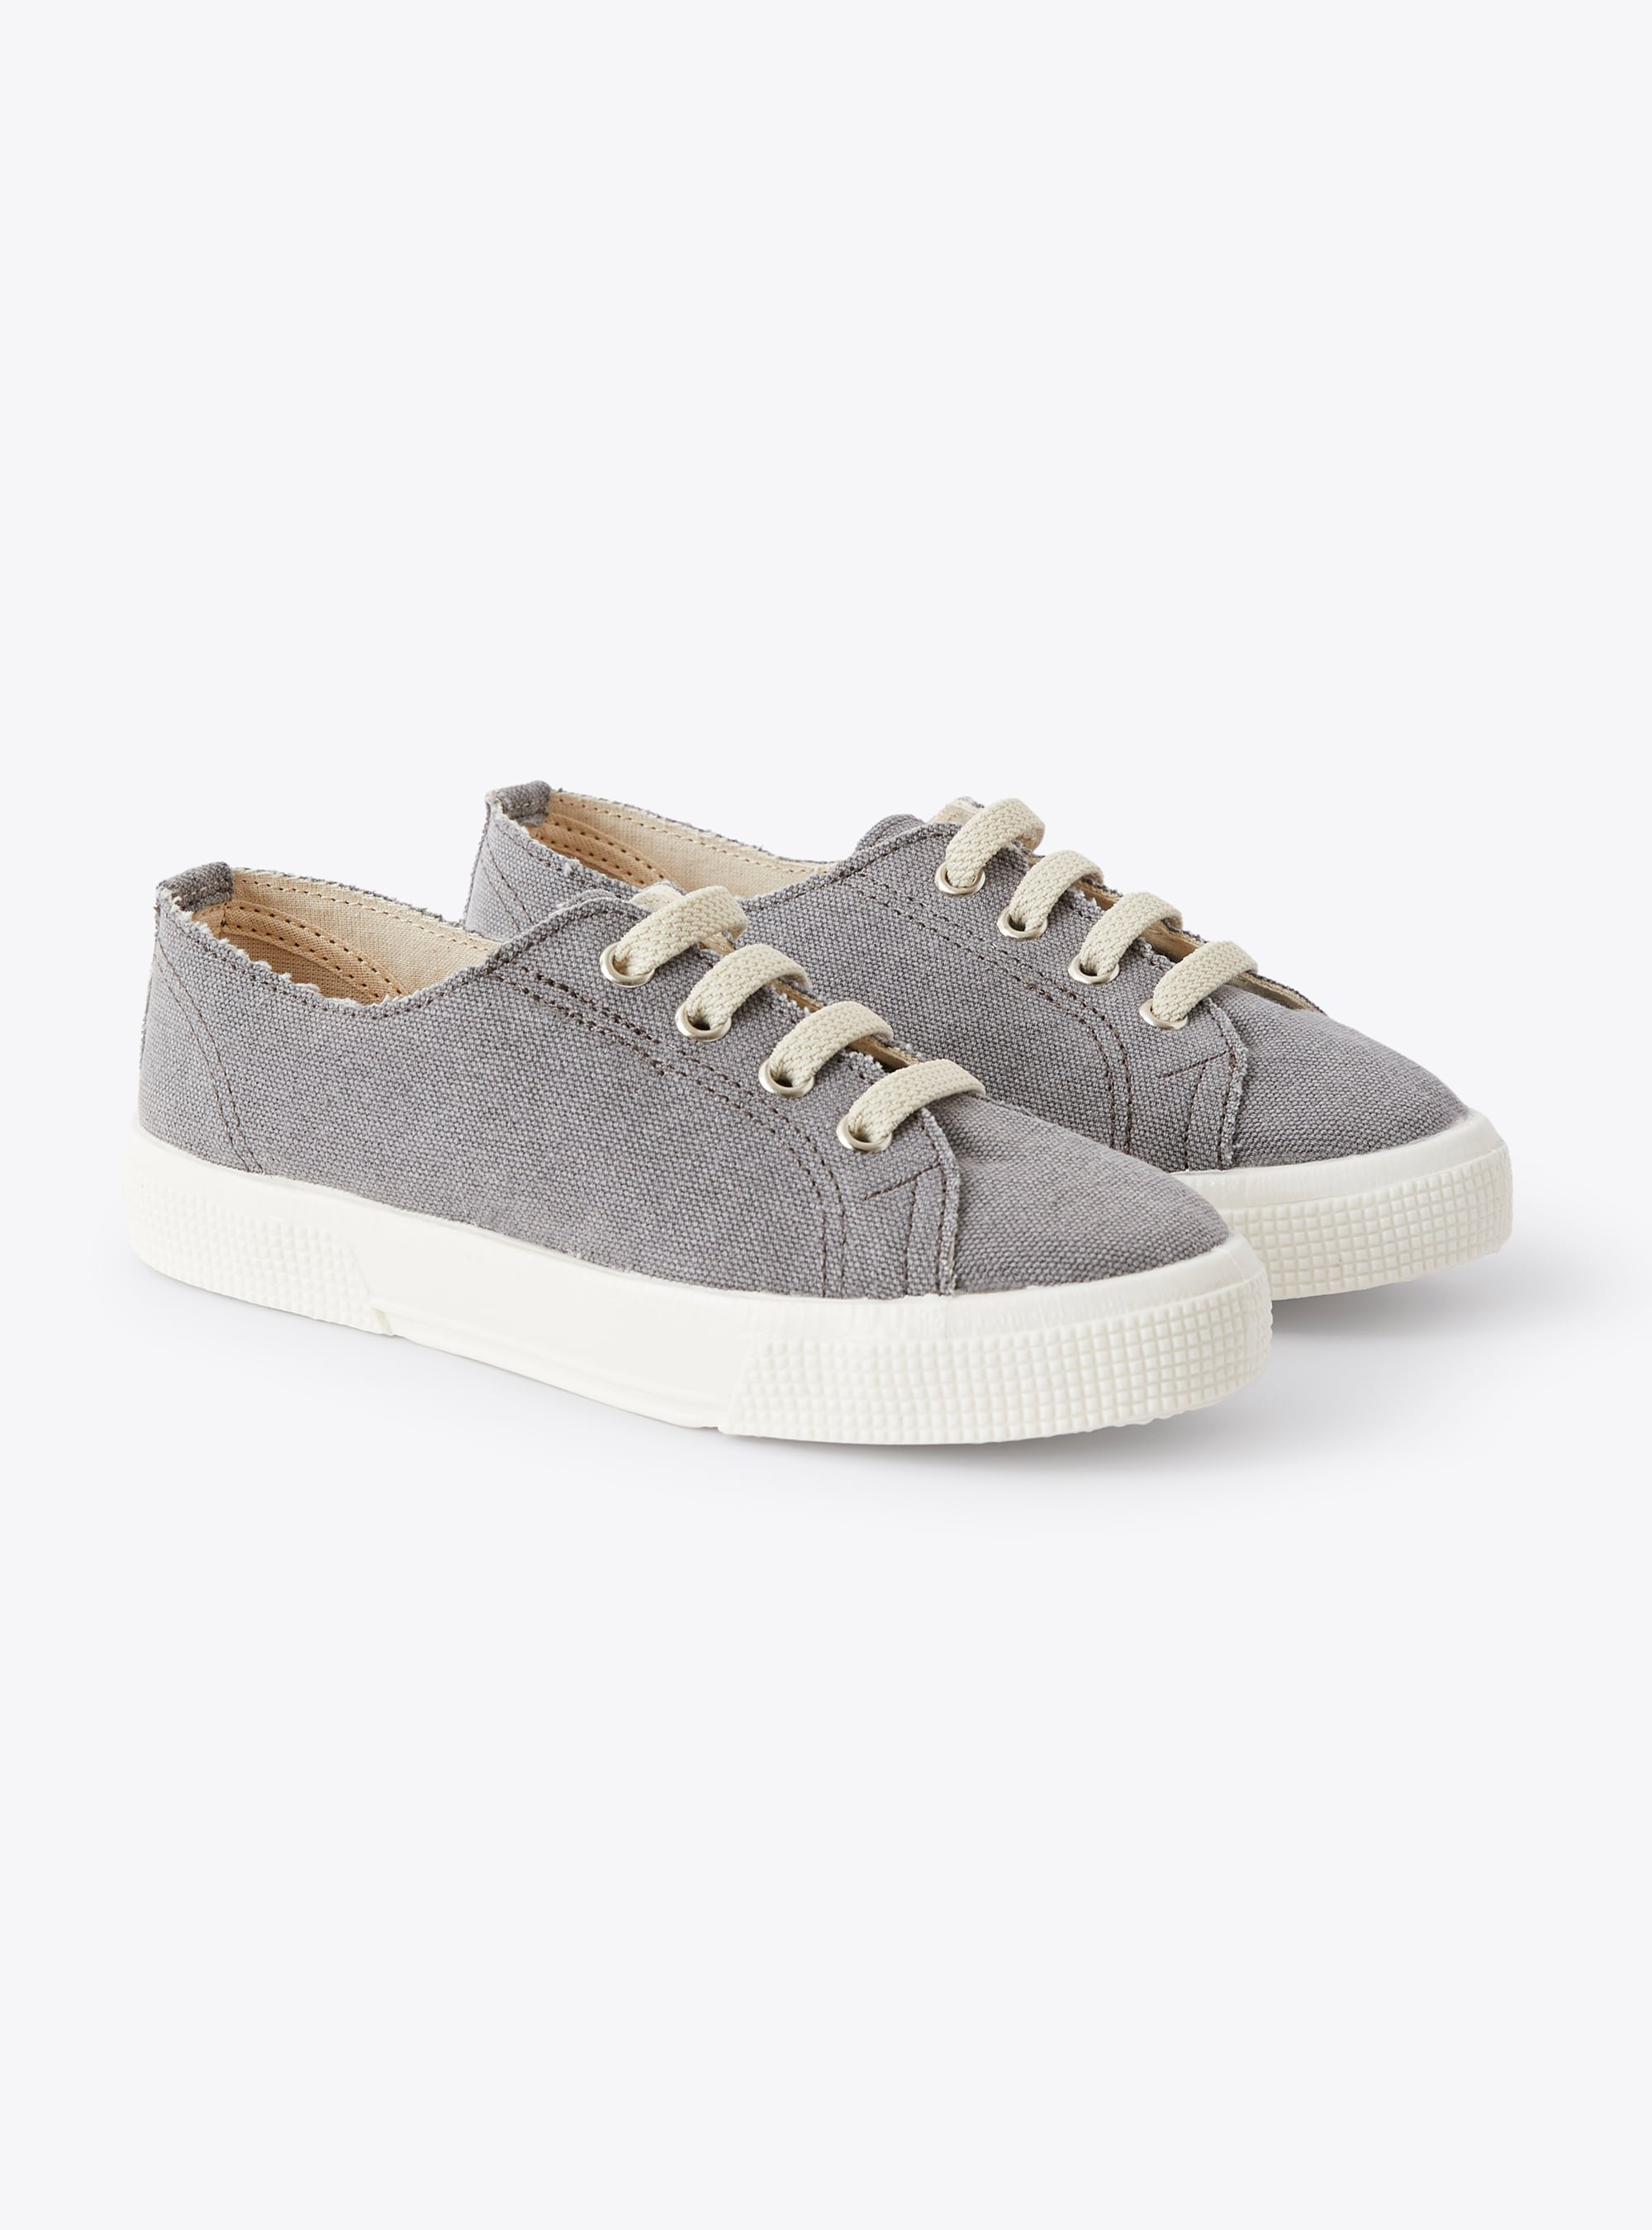 Sneakers aus grauem Segeltuch mit Schnürsenkeln - Schuhe - Il Gufo